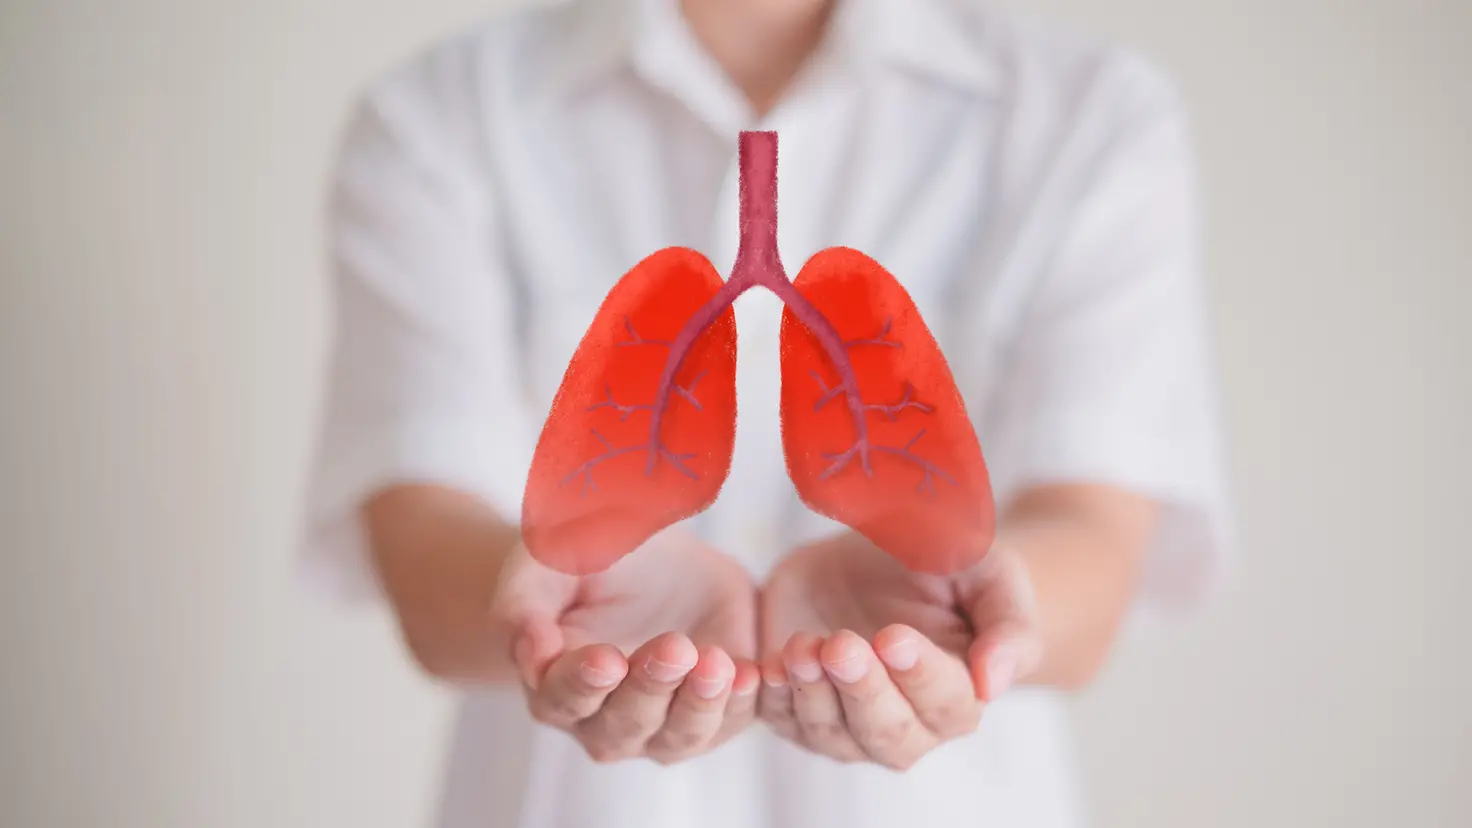 Zu sehen ist ein Bild zur Organspende, auf dem ein Mann ein Symbolbild einer Lunge vor sich hält